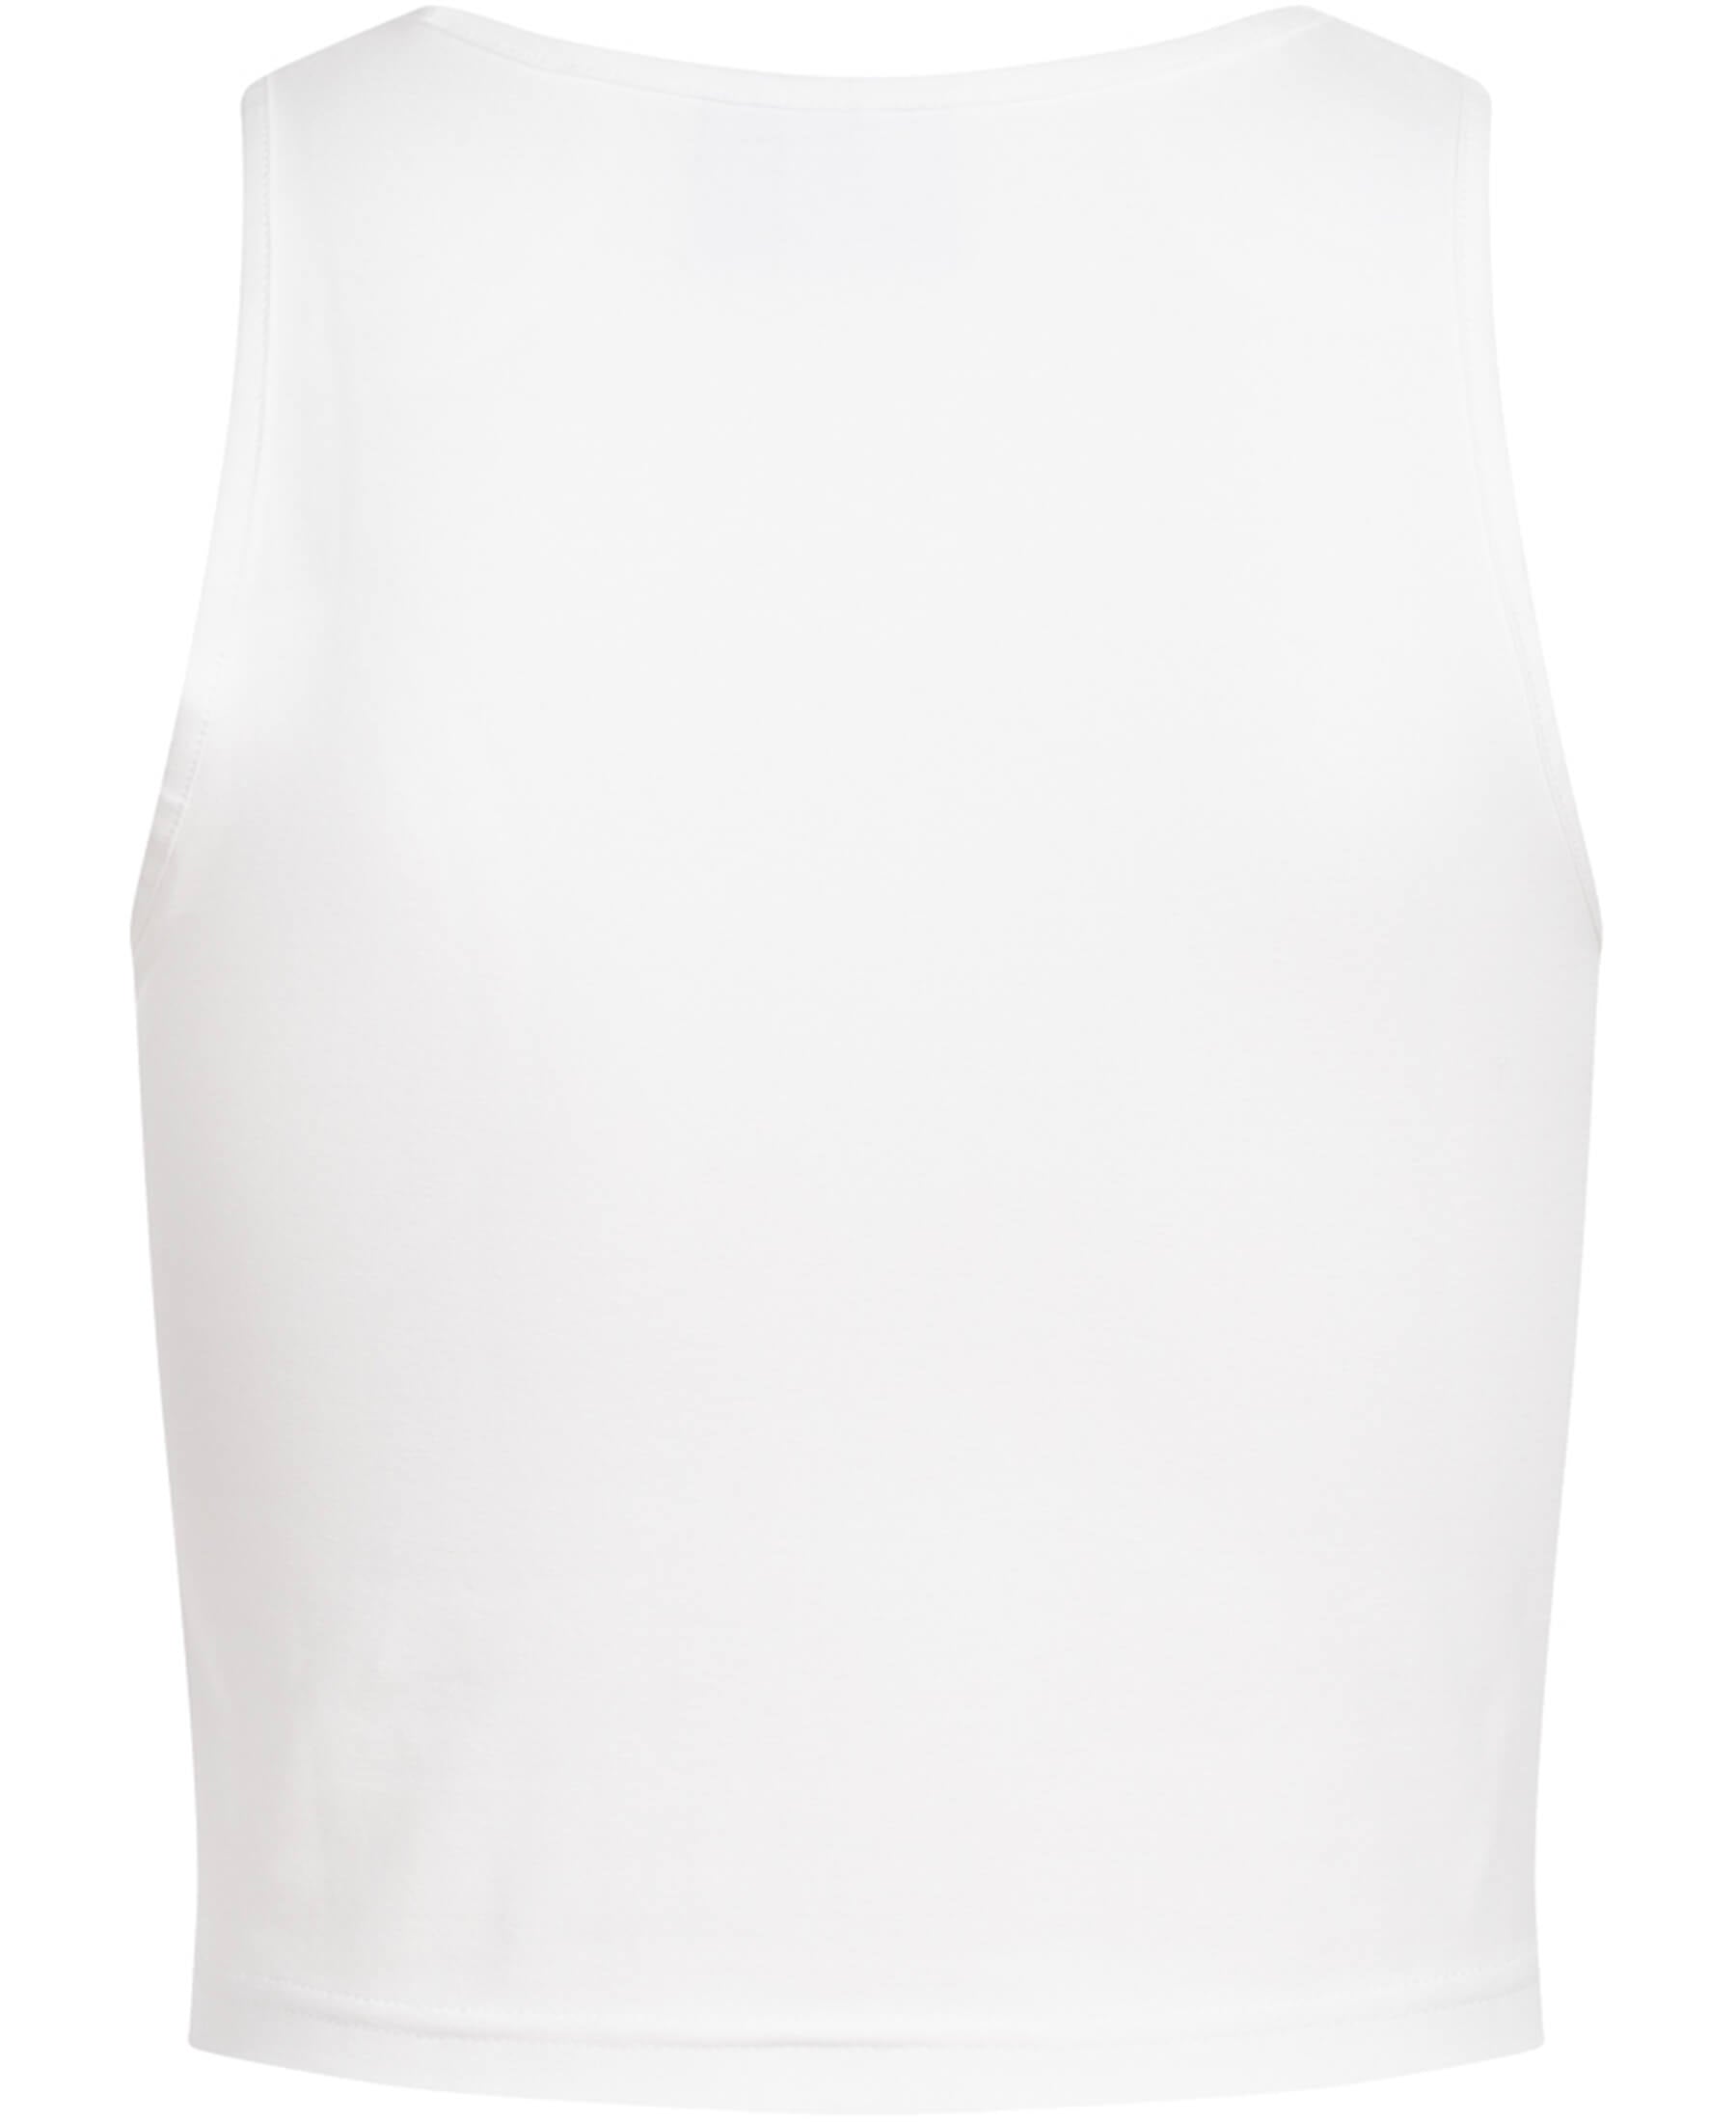 Das Adidas Originals 3-Stripes Cropped Damen Tank Top (GP1914) ist ein modisches und bequemes Oberteil für sportliche Damen. Mit ikonischem Design und hochwertiger Qualität ist es perfekt für lässige Outfits oder Fitness. Erhältlich bei SHOP4TEAMSPORT - dein Ort für stilvolle Sportbekleidung.